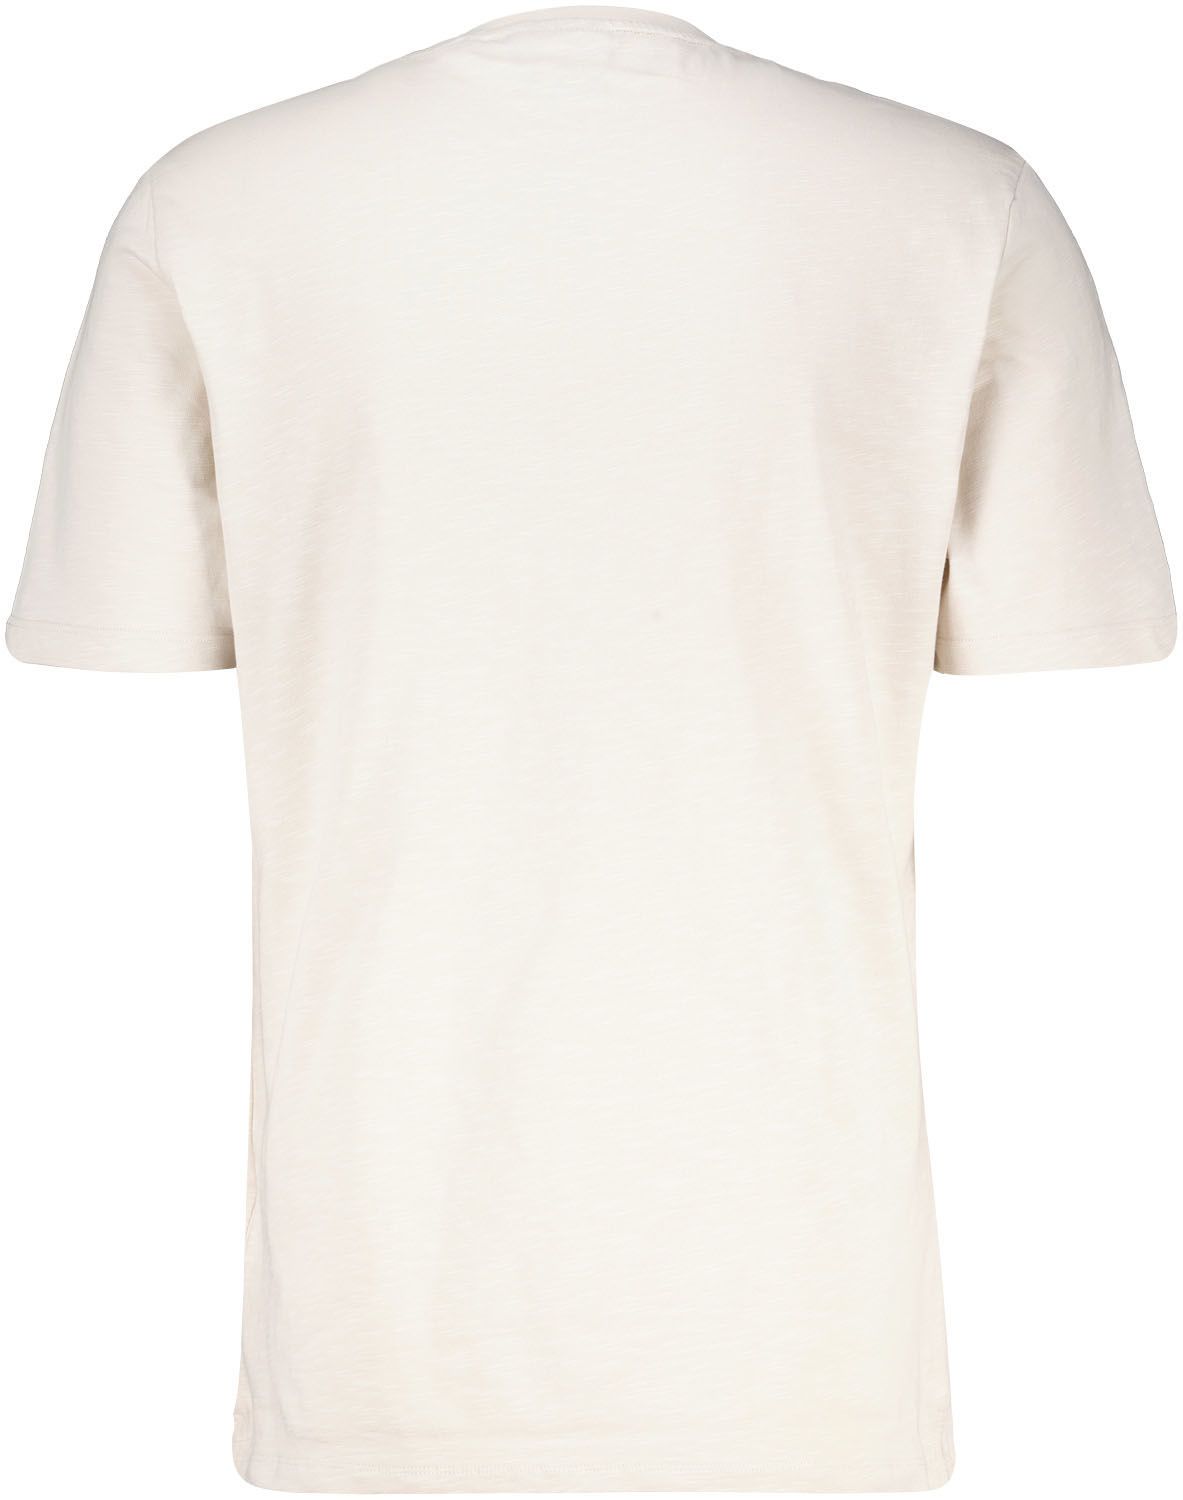 Lyle & Scott T-Shirt Slub Crème Wit